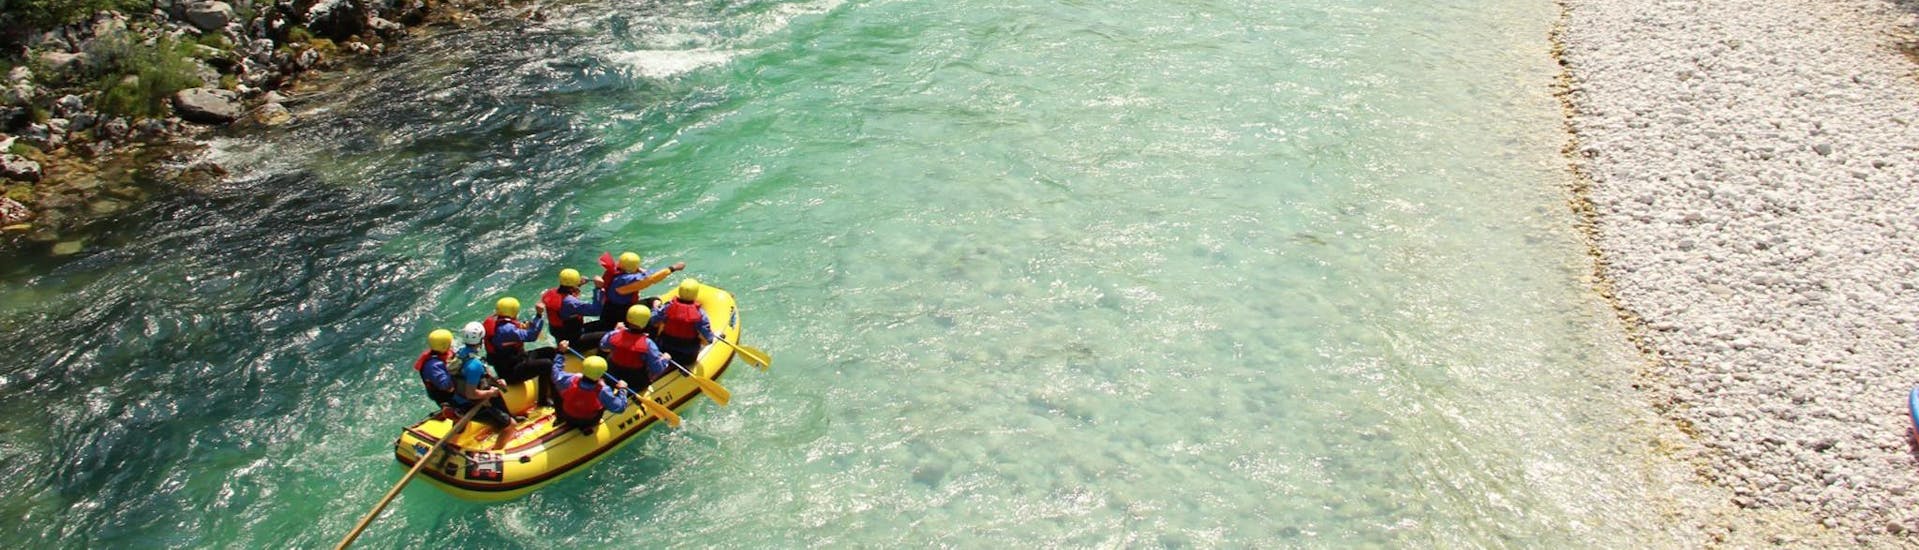 Un gruppo di partecipanti farà rafting su un passaggio tranquillo nella Valle dell'Isonzo - tour standard con TOP Rafting Centre.